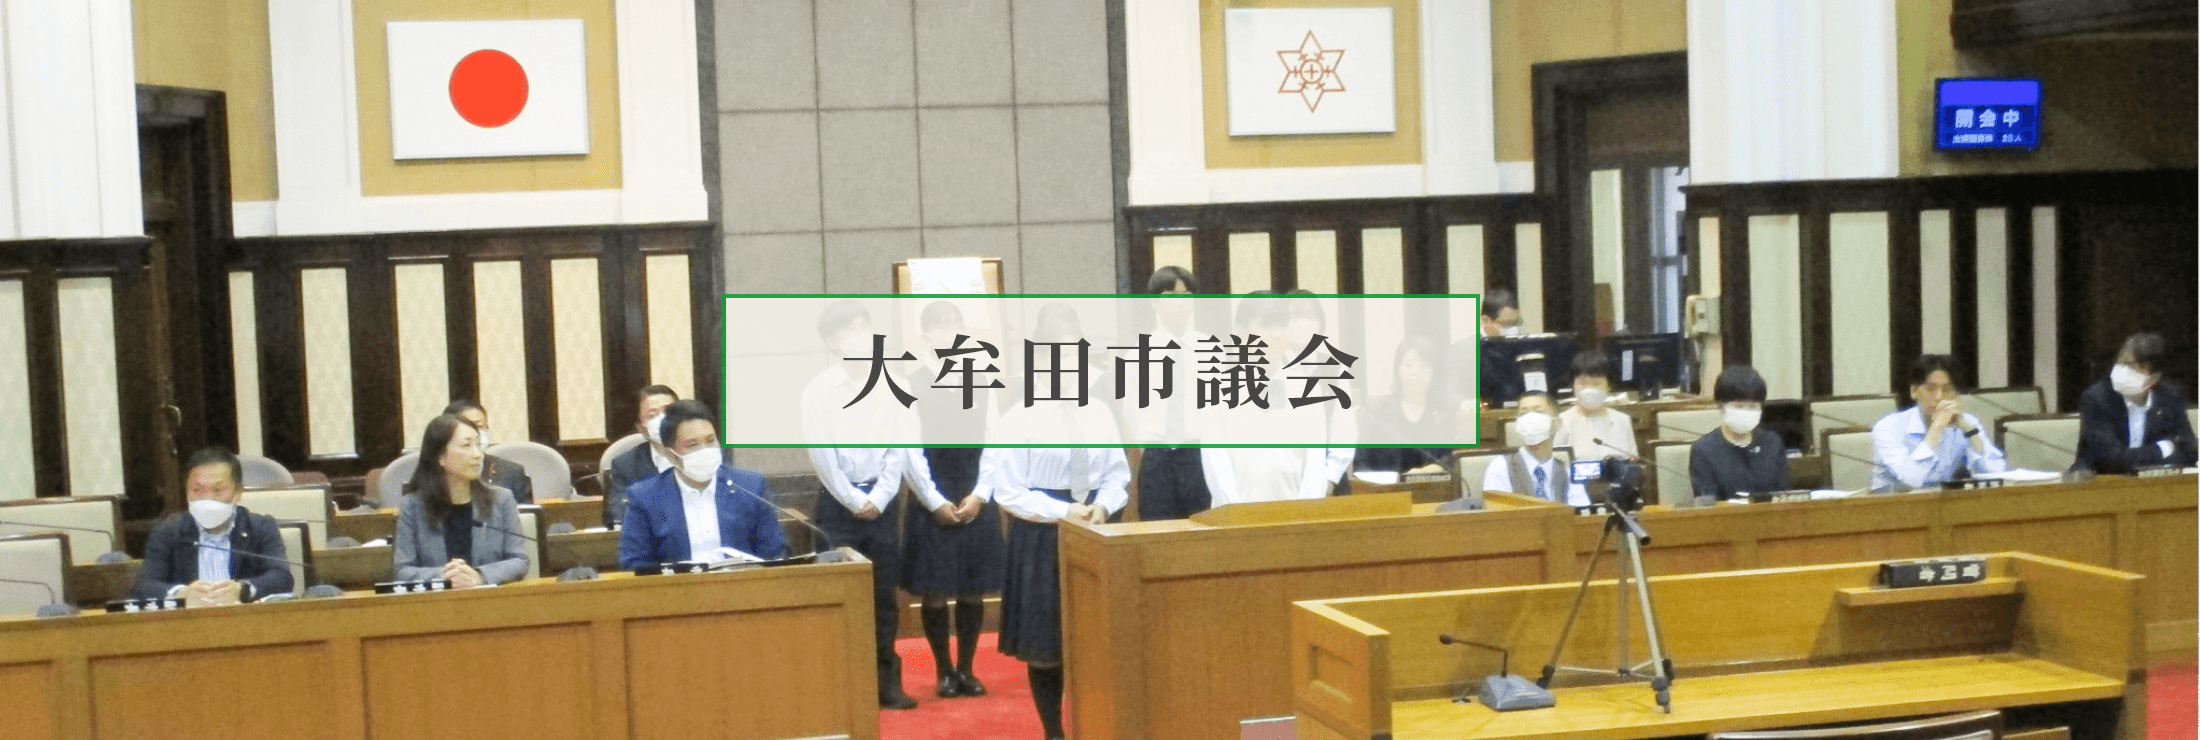 大牟田市議会の様子スライド